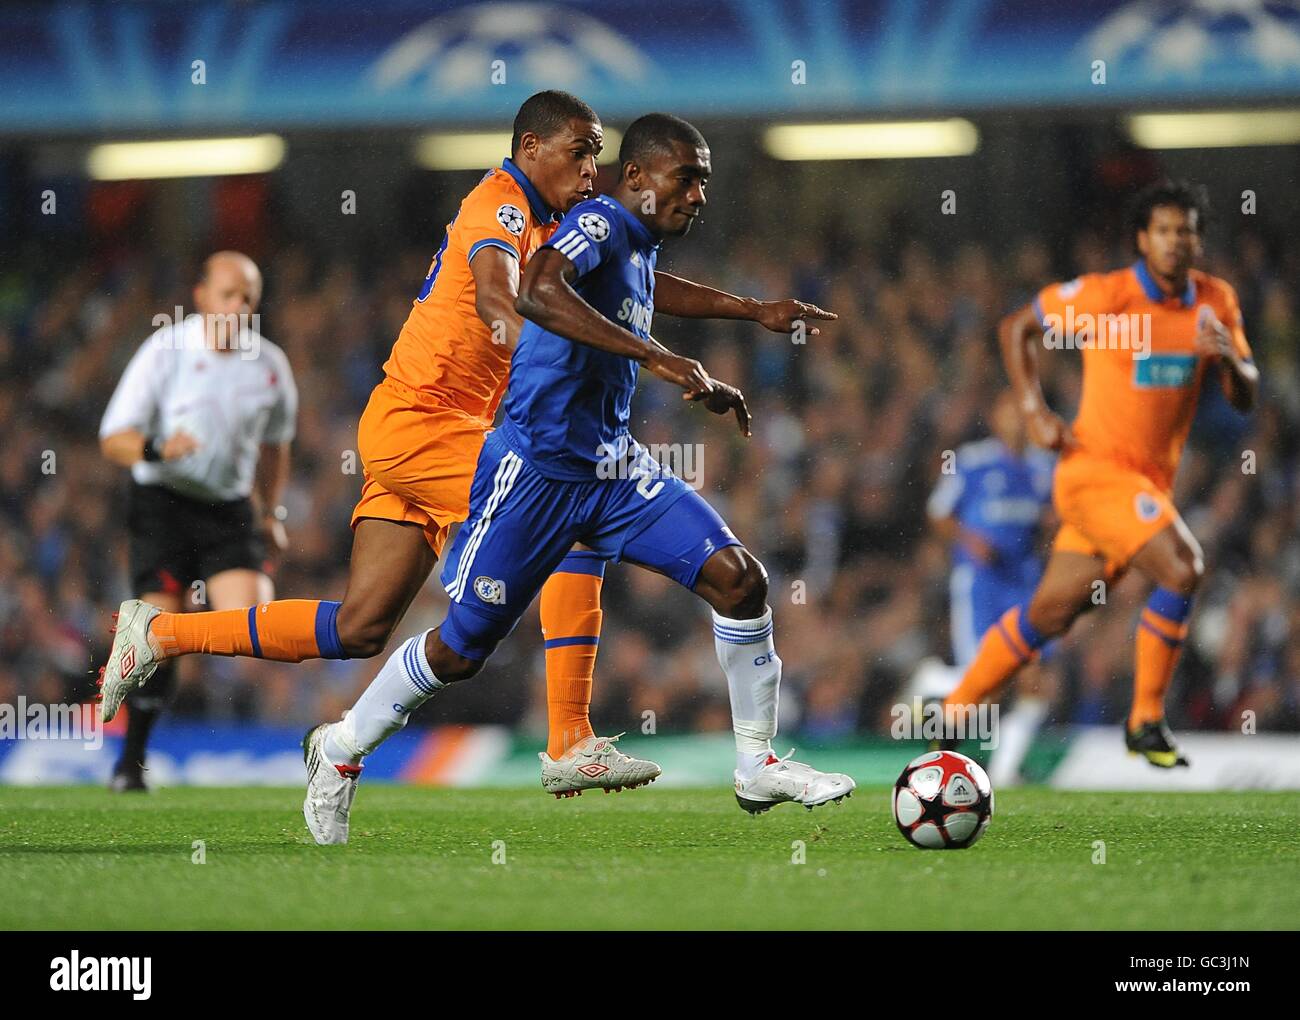 FC Porto's Fredy Guarin (left) and Chelsea's Salomon Kalou (right) battle for the ball. Stock Photo